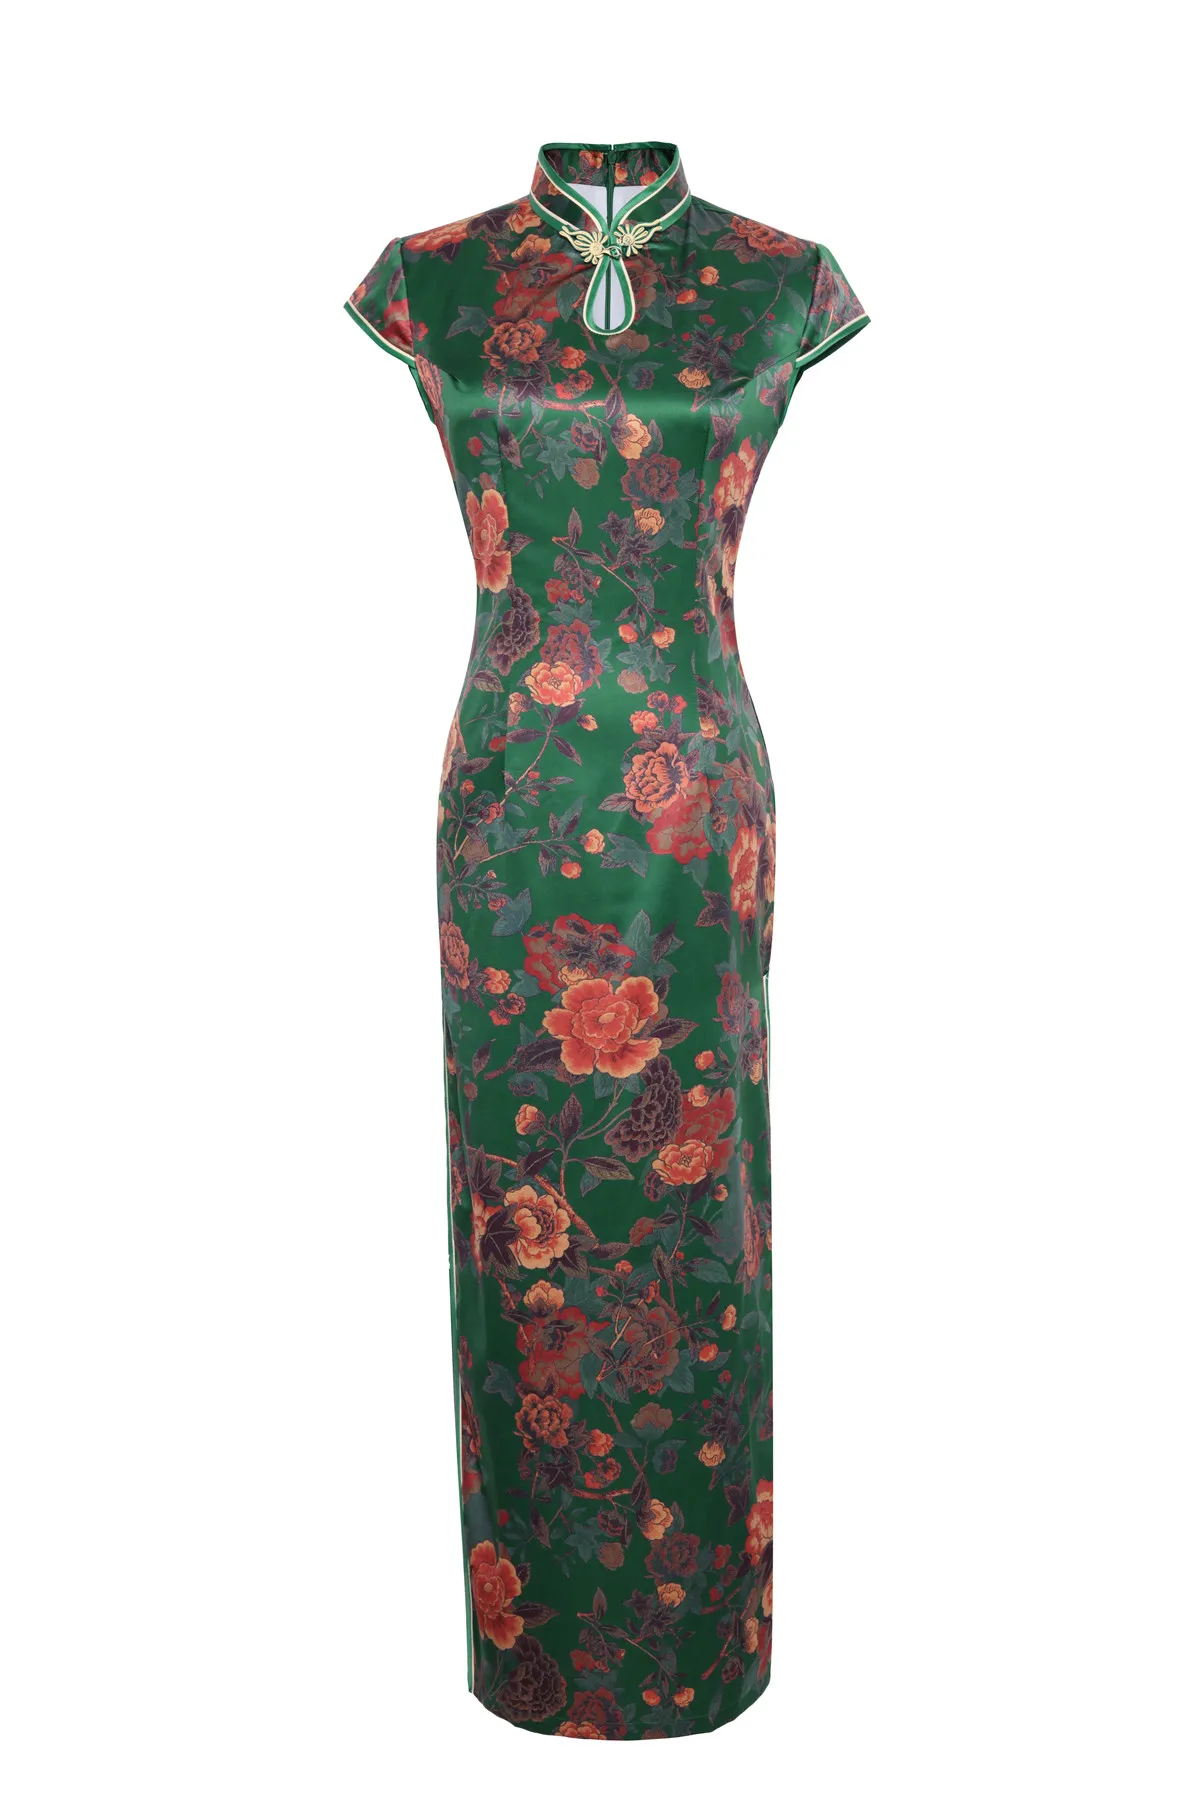 Шанхай история Лето Новое поступление длинное платье Ципао Китайская традиционная одежда для женщин Замочная скважина Qipao